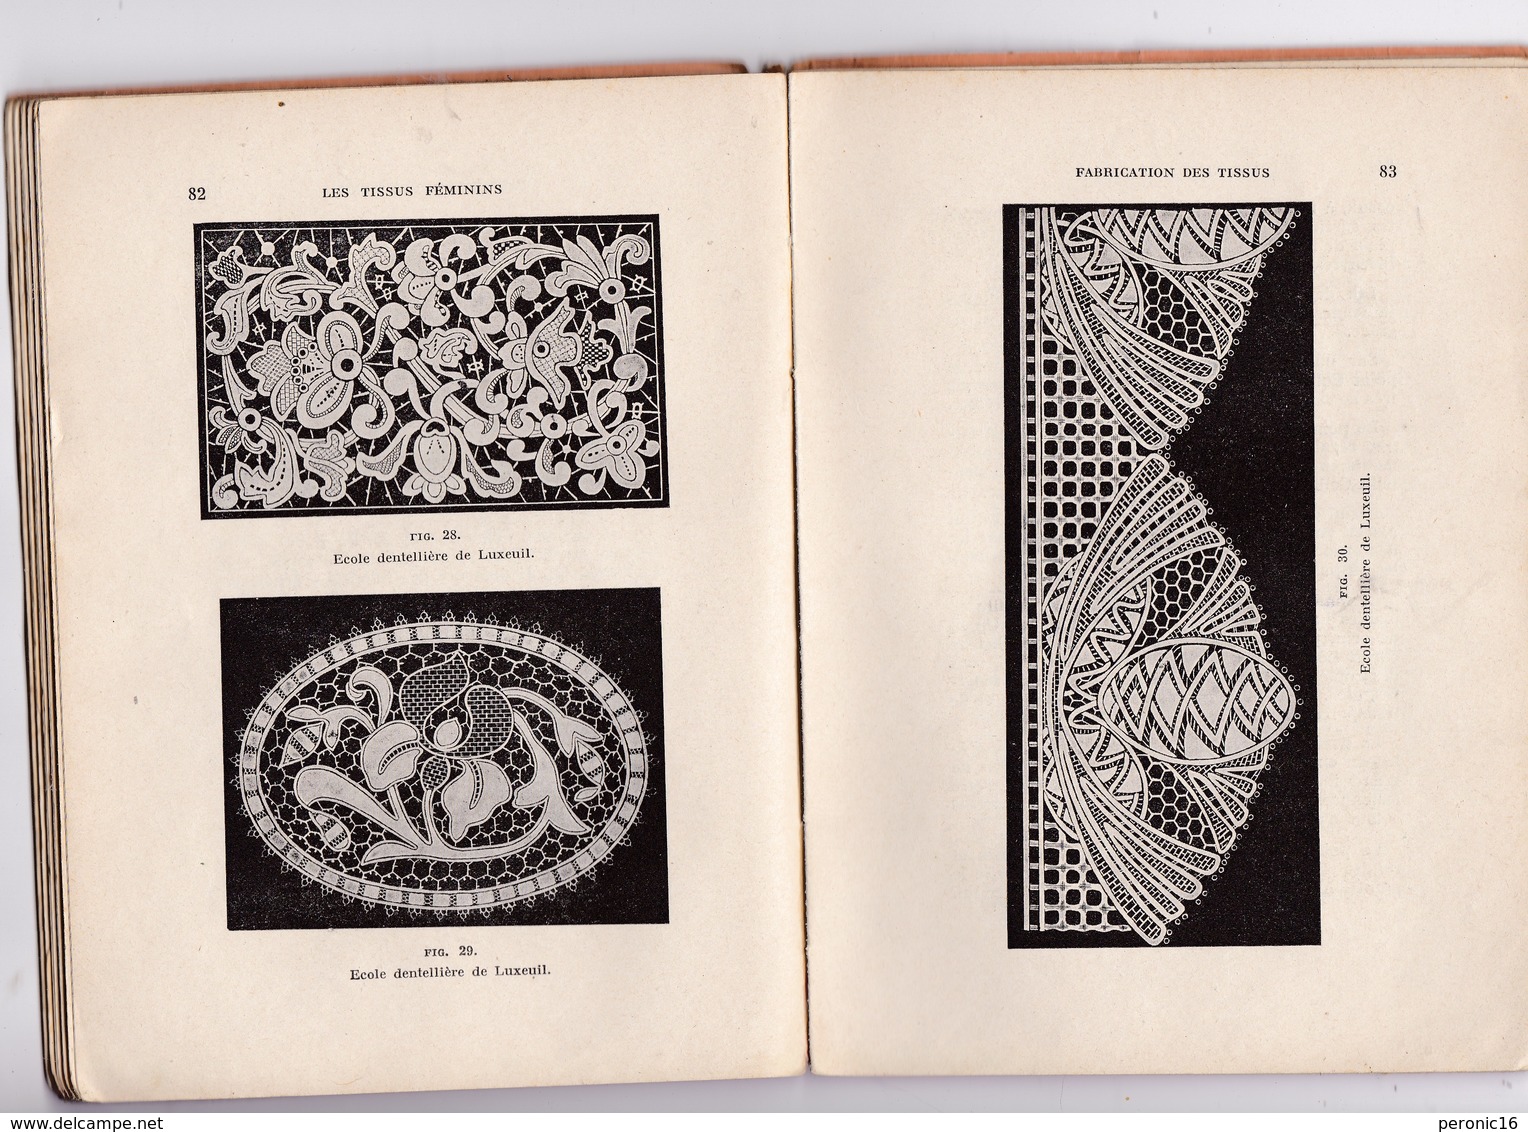 Rare «Livre De La Profession» ! L. Doresse, Les Tissus Féminins, 2e édition, Eyrolles, Paris, 1929 - Laces & Cloth